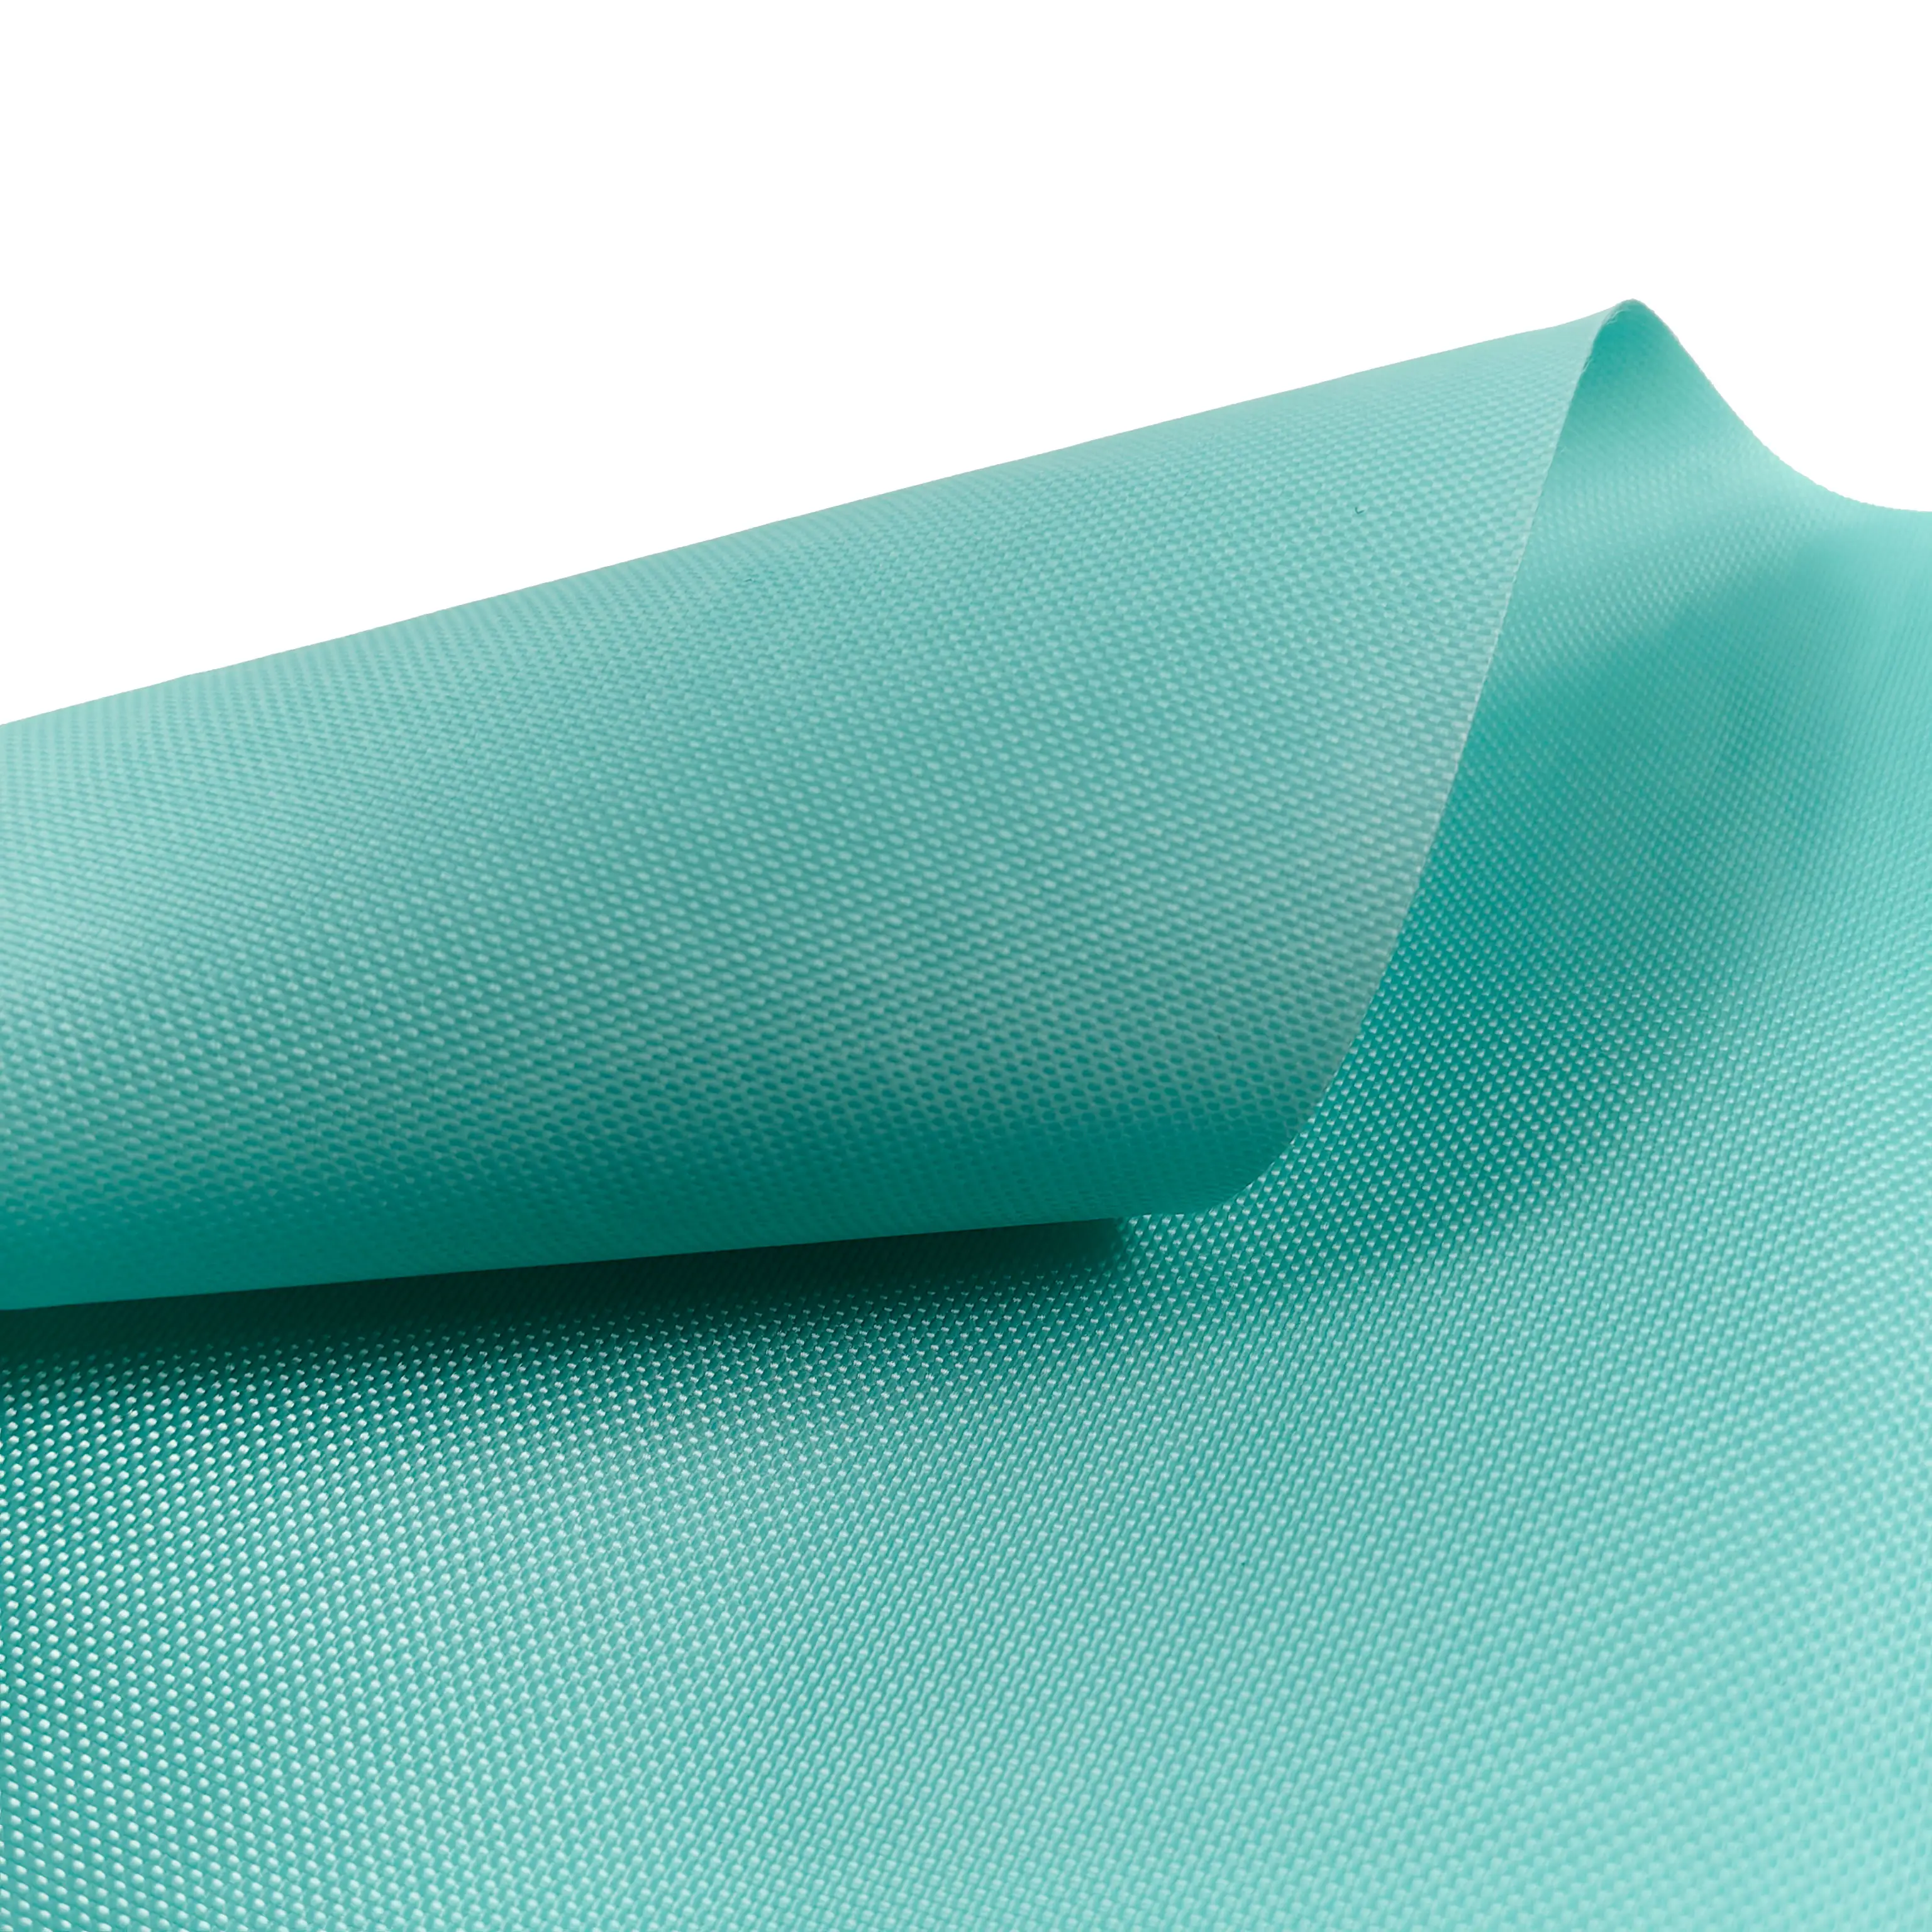 420D poliéster tecido TPE revestimento Oxford tecido impermeável com resistência ao desgaste e rugas para saco tenda esfigmomanômetro-cuff